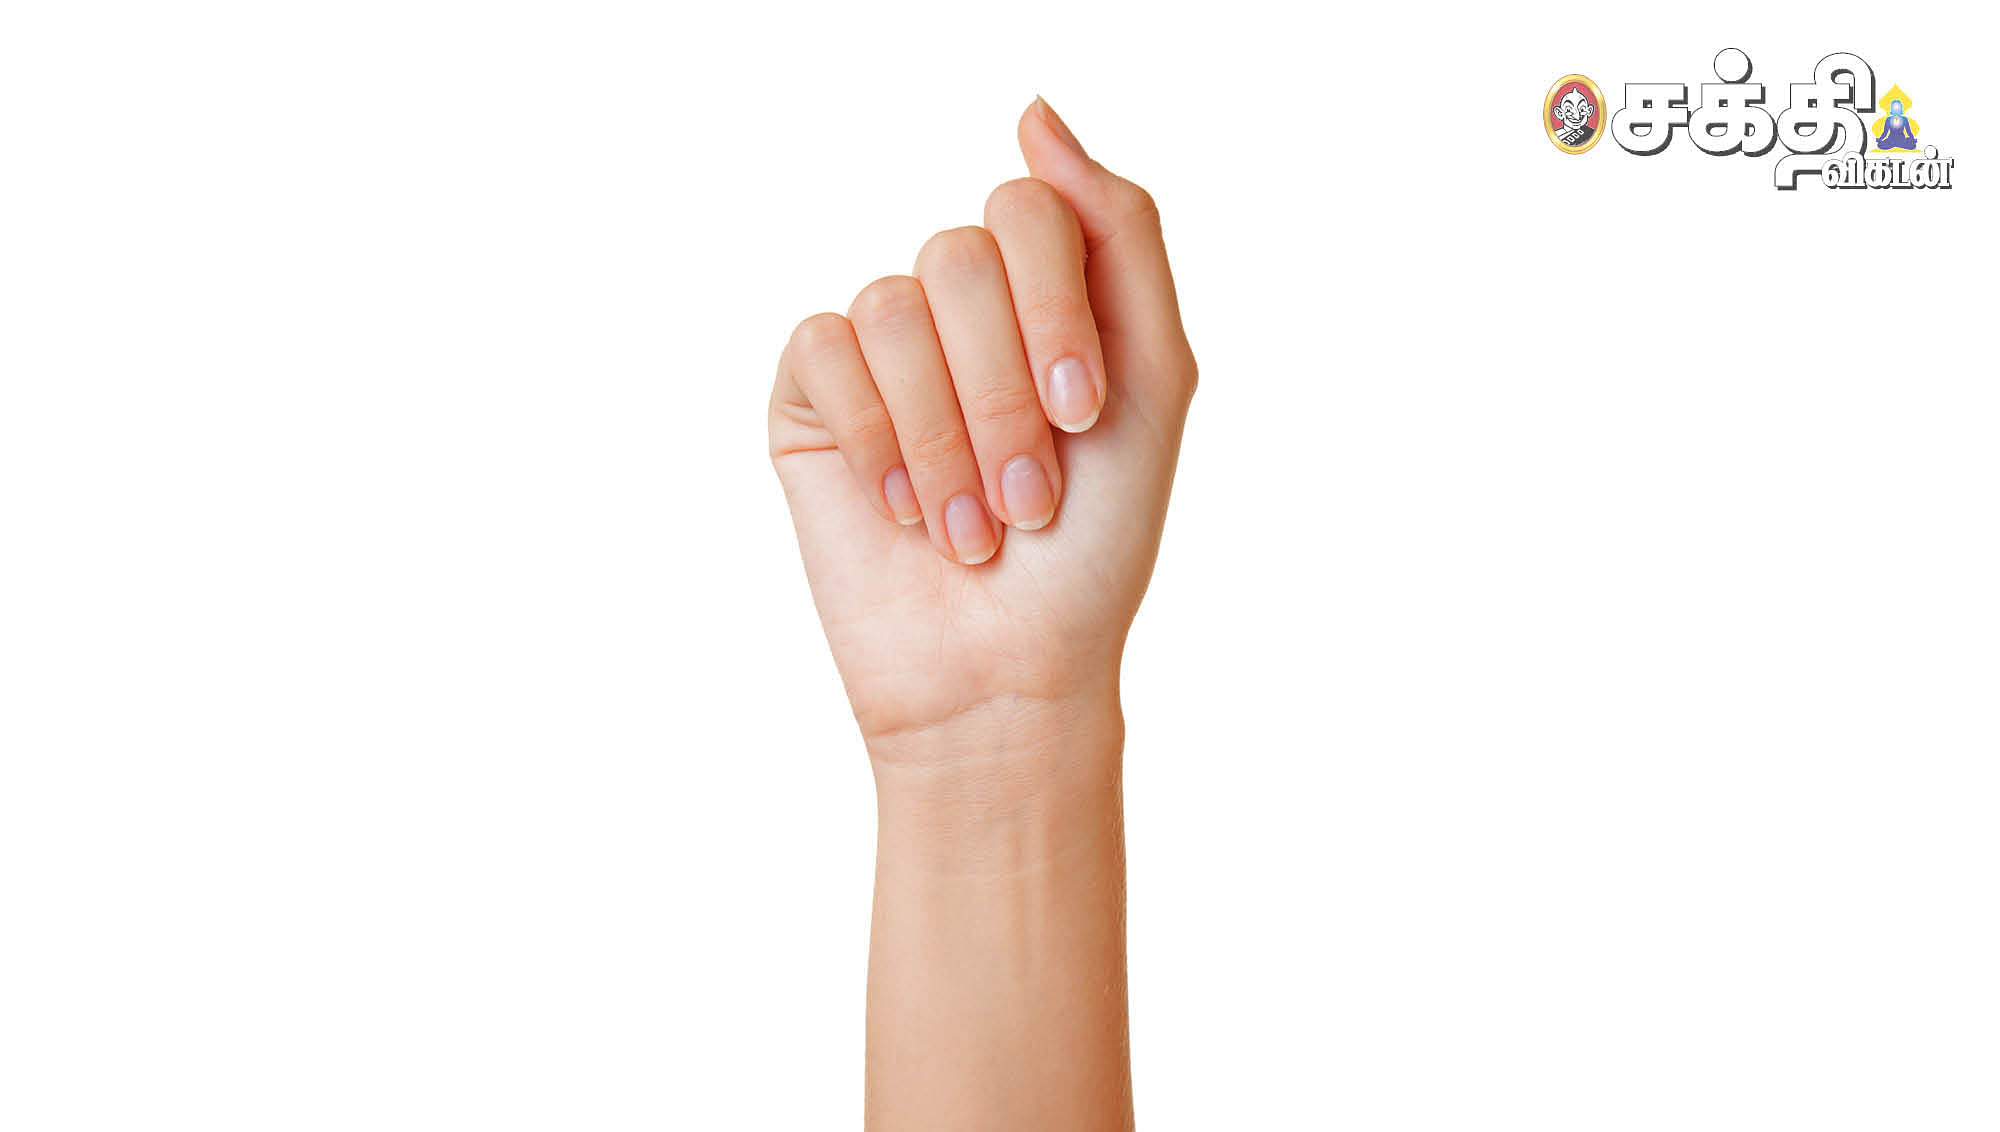 நகங்கள் காட்டும் நோய் அறிகுறிகள்! Dr.M.S.UshaNandhini | PuthuyugamTV #Nails  #Diseases #நகம் #நகங்கள் #Prevention #WomenCare #PuthuyugamTV  #periodtalk... | By PuthuyugamtvFacebook